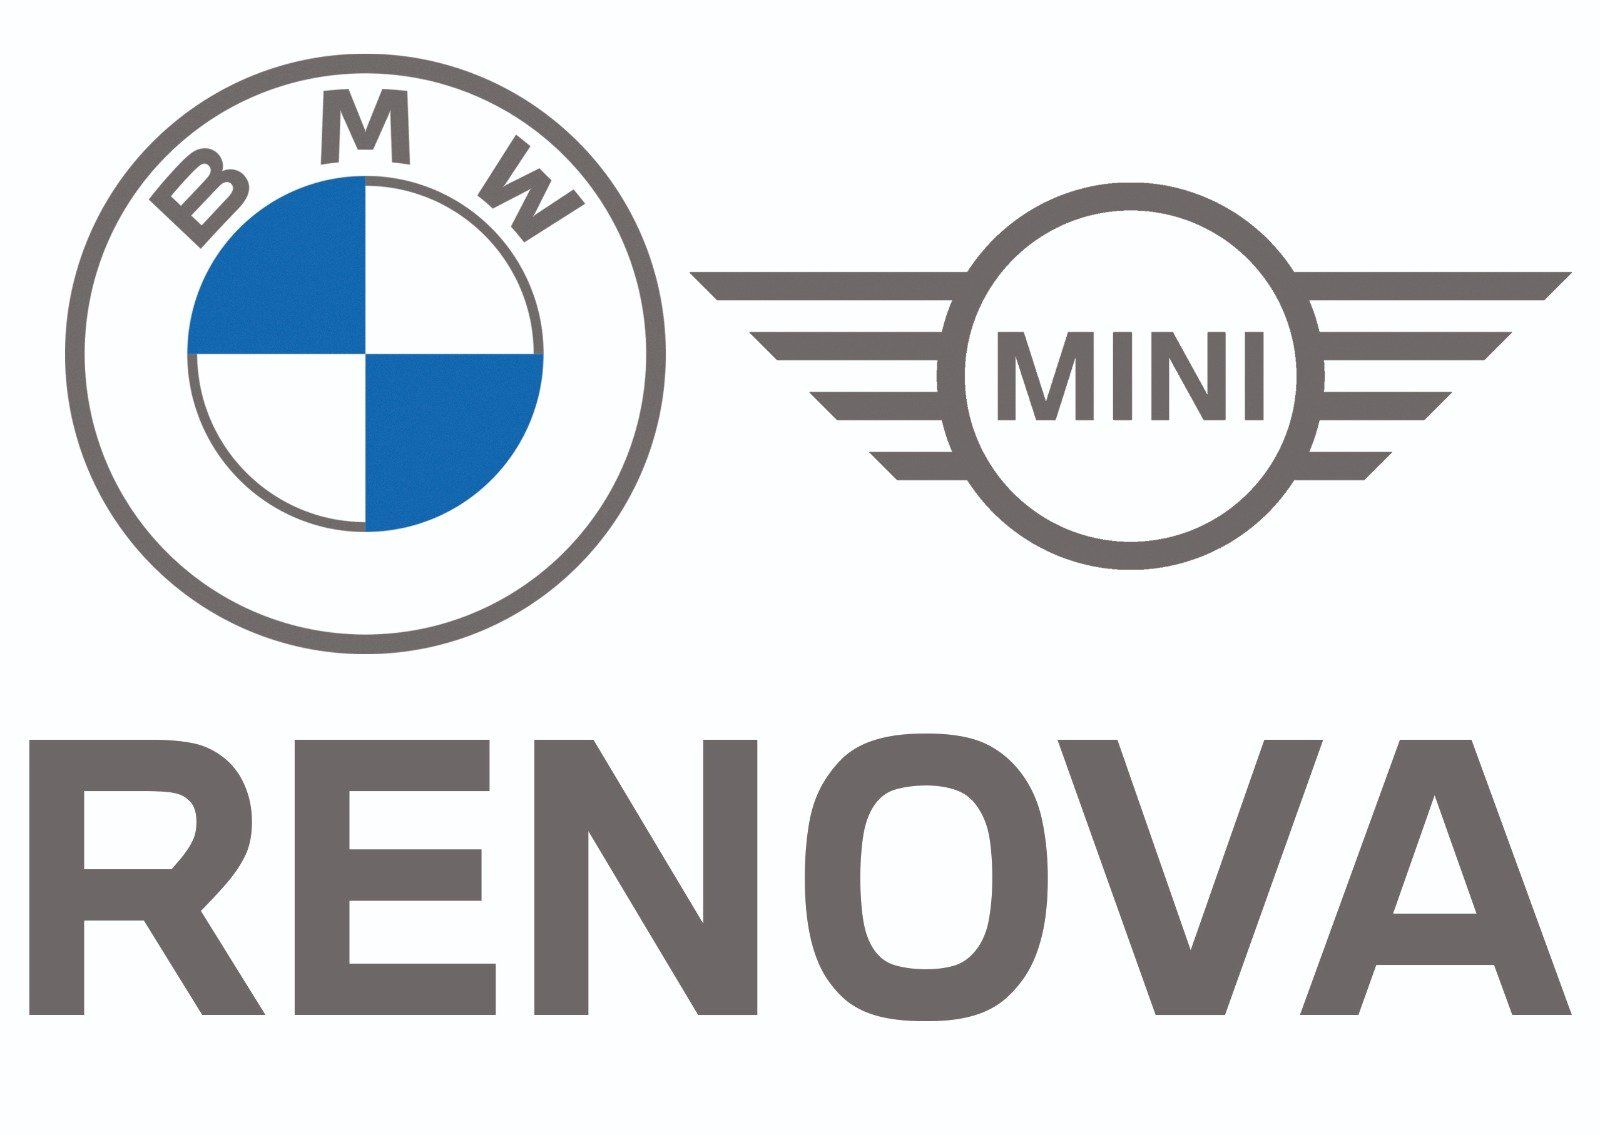 Welkom bij Renova! | Úw officiële BMW en MINI Dealer | Renova.nl